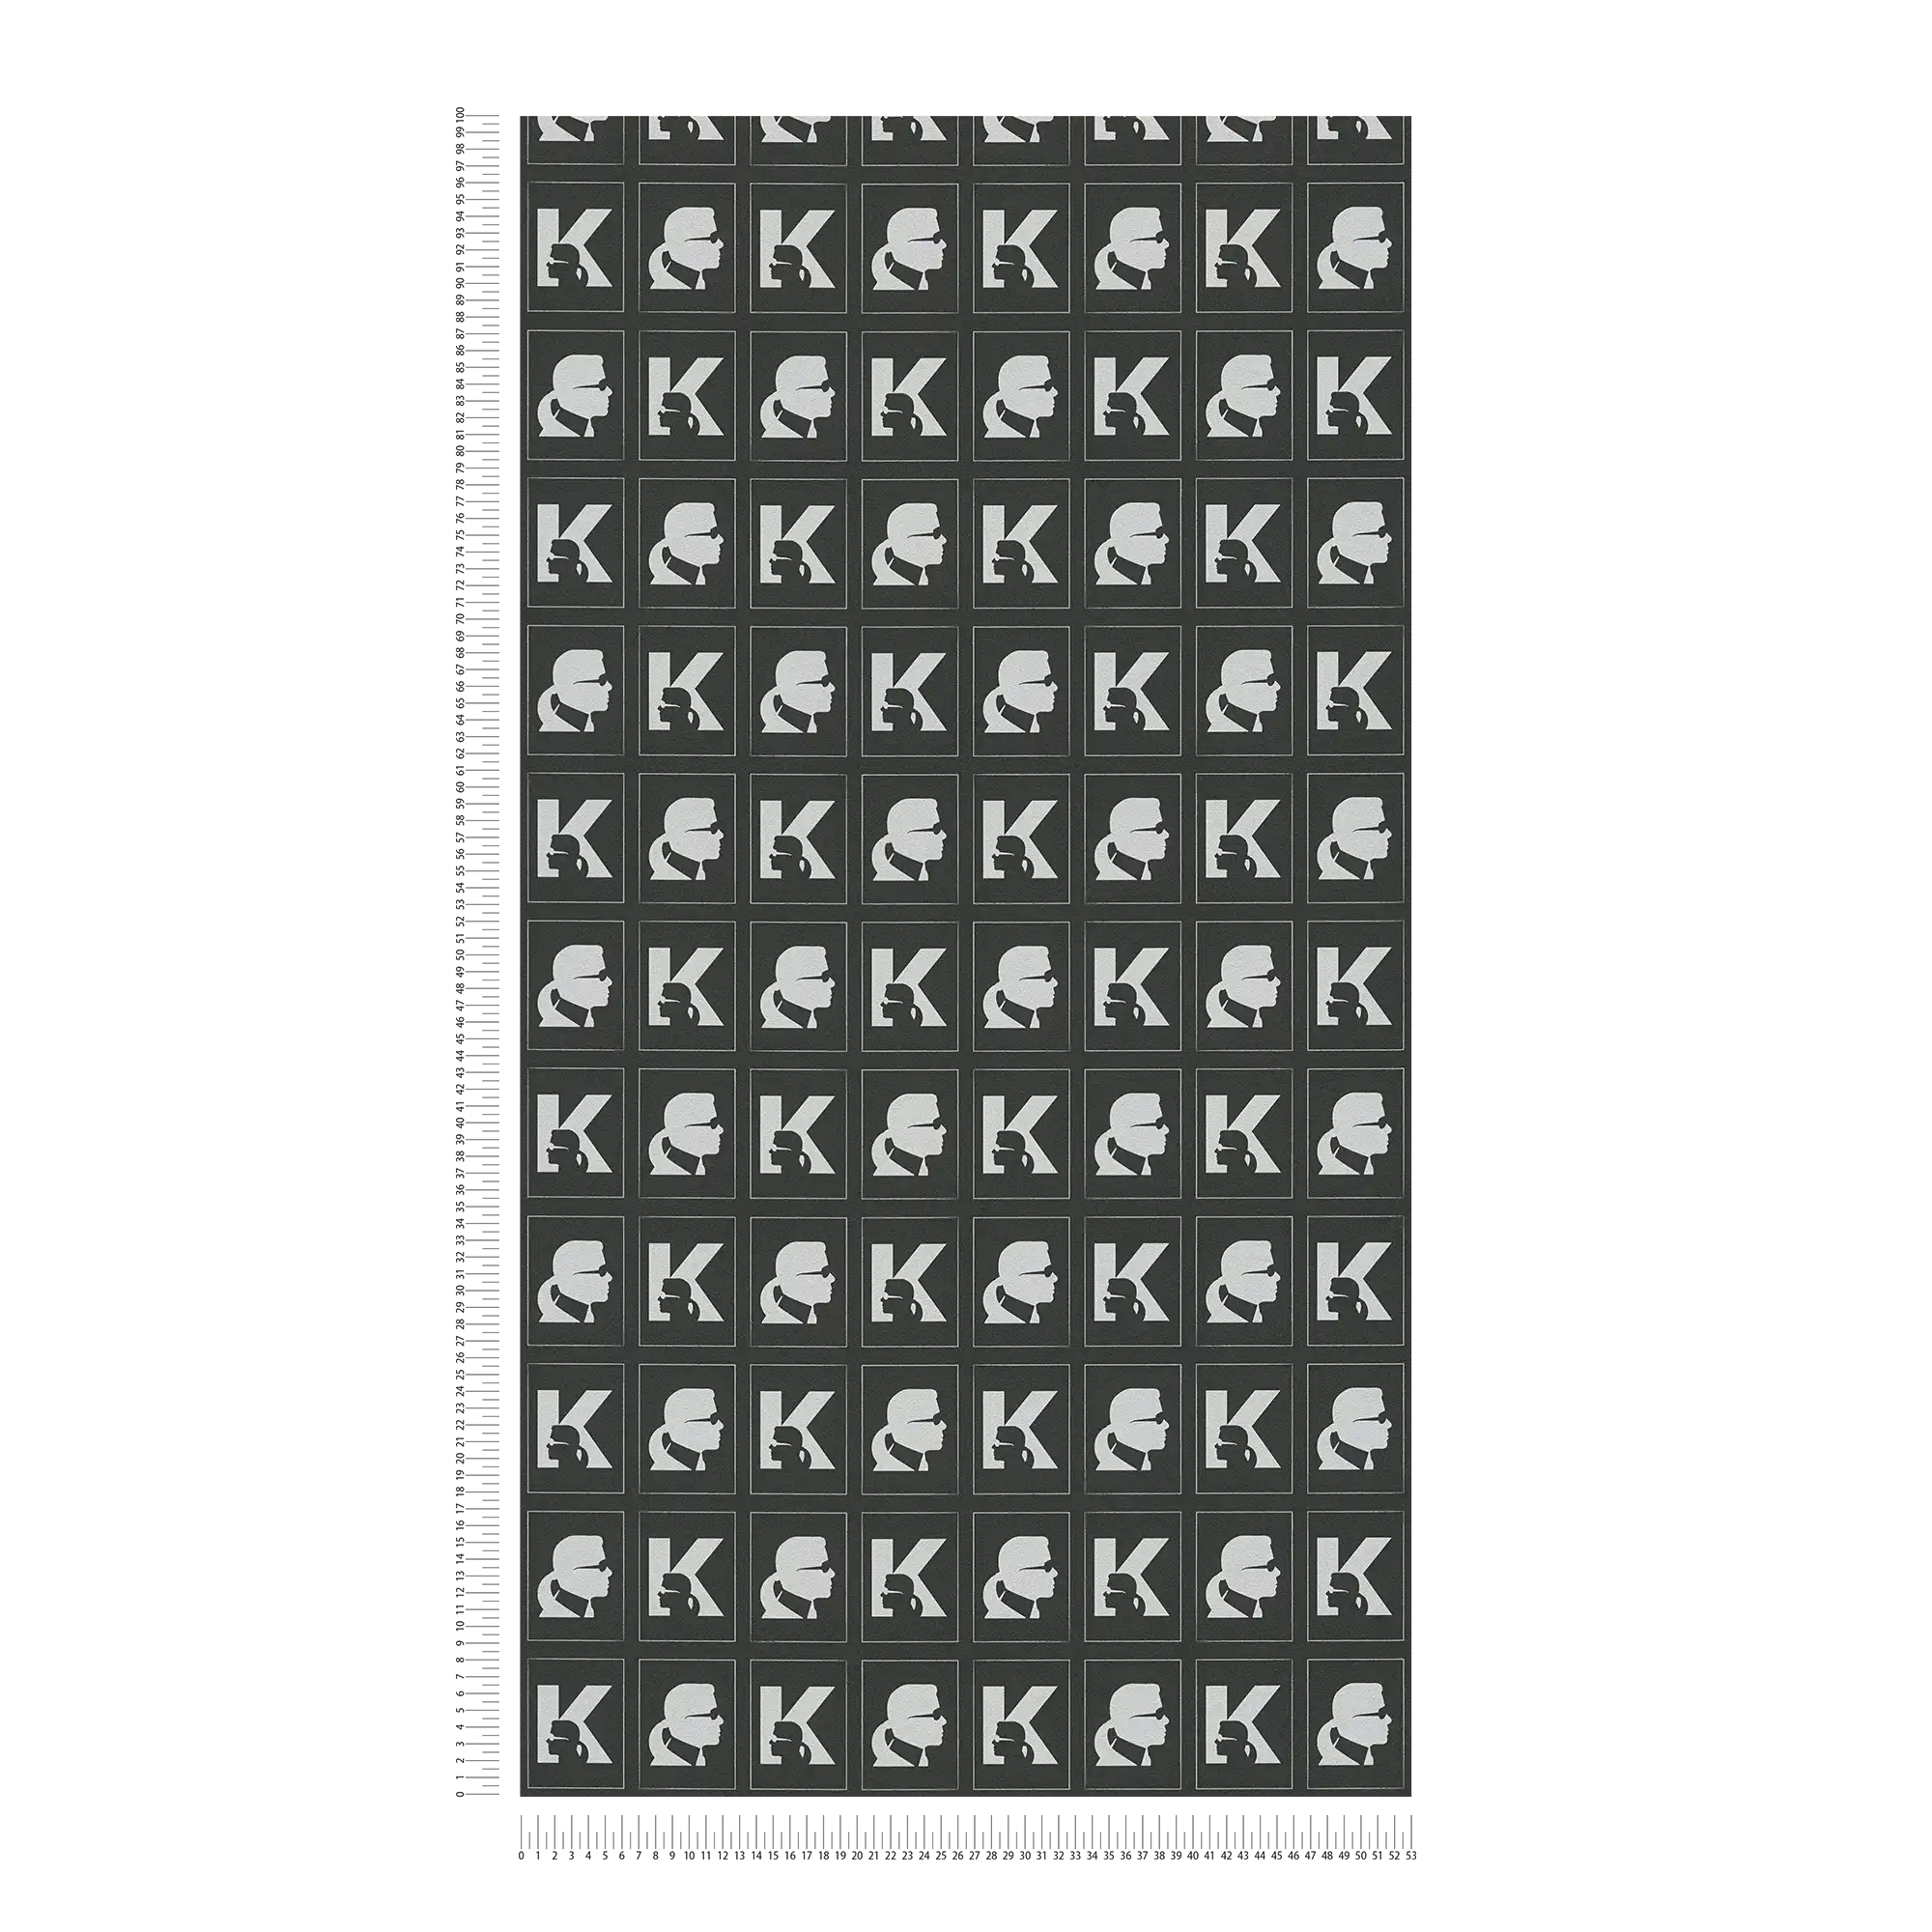             Karl LAGERFELD papier peint intissé motif emblème - métallique, noir
        